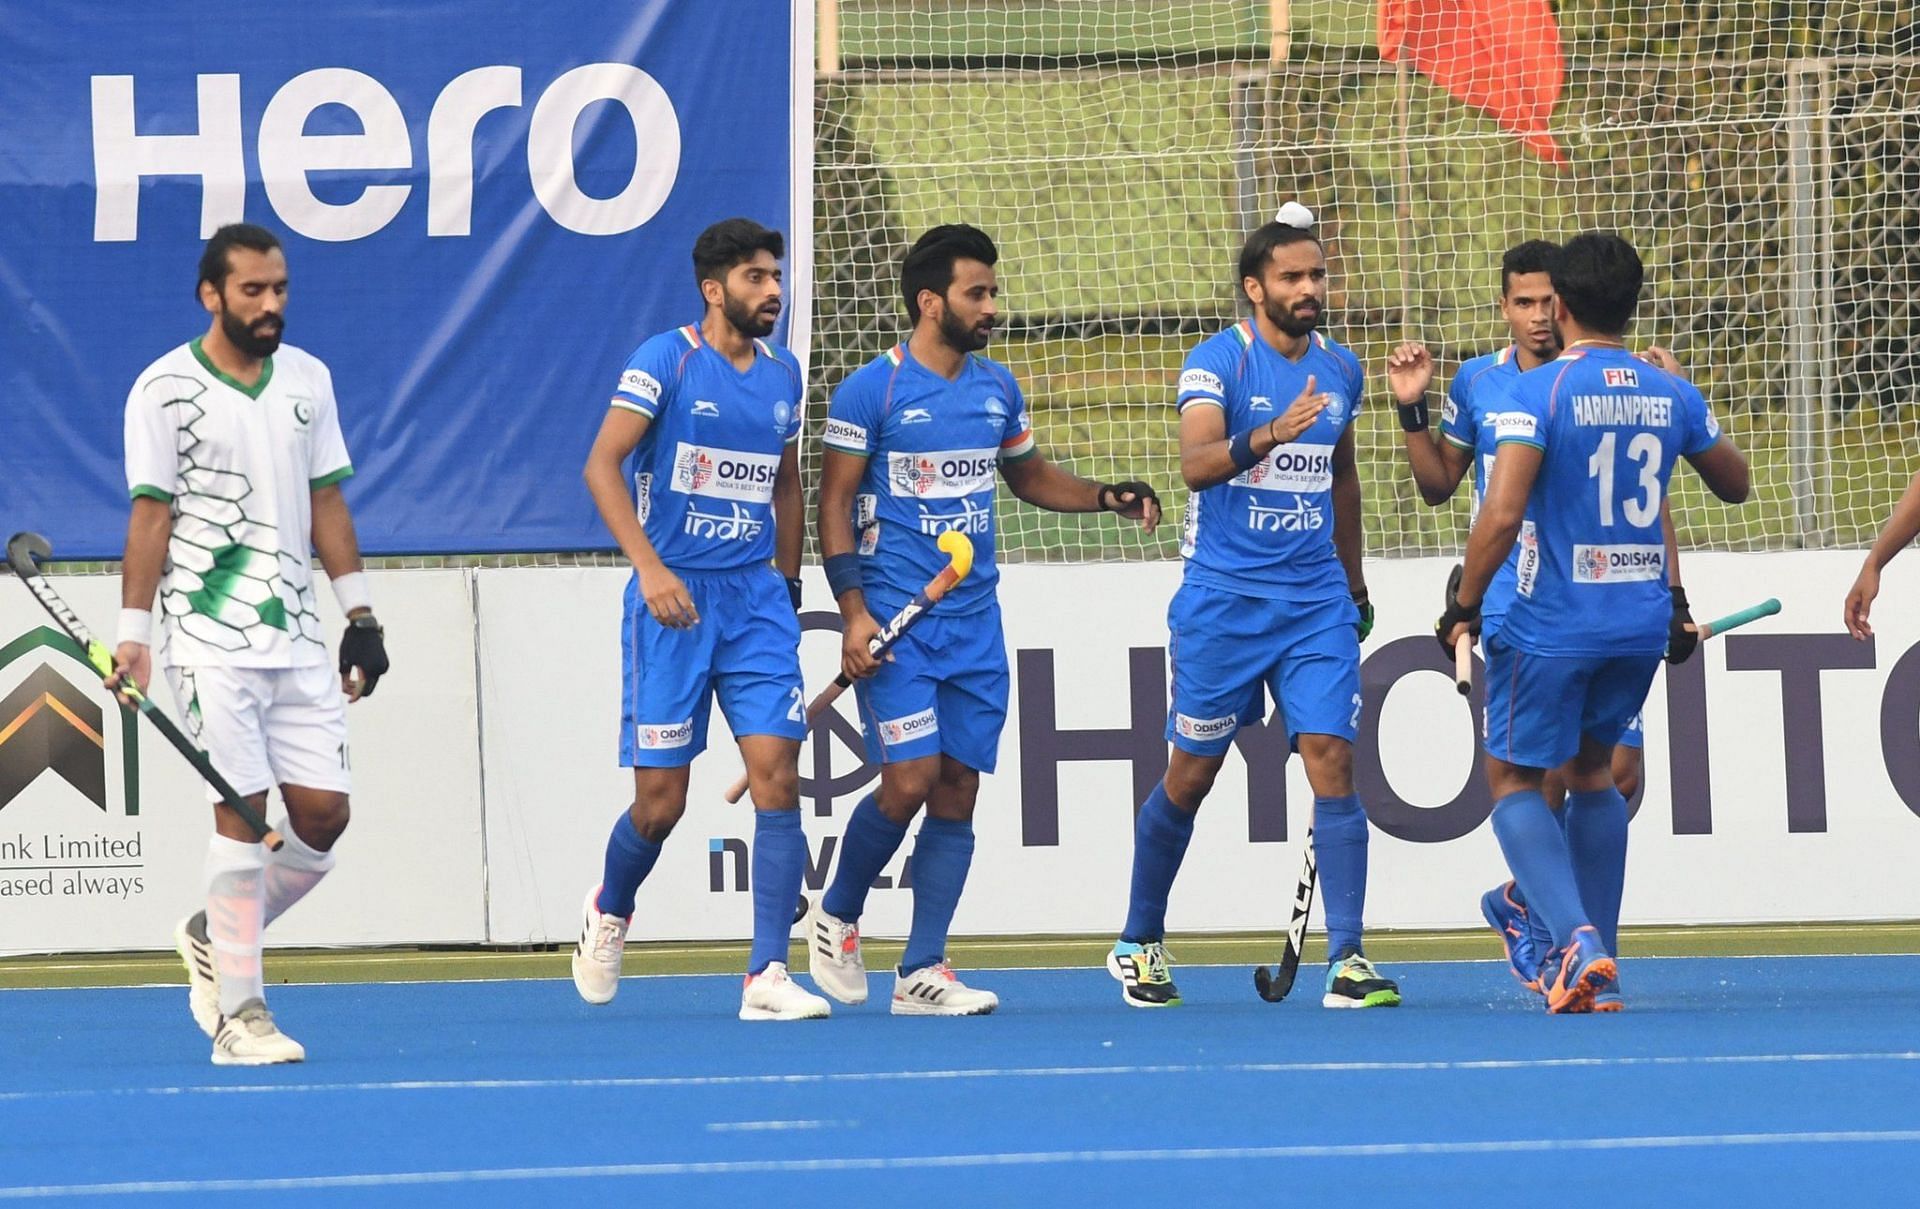 भारतीय टीम एशिया कप की गत विजेता है और कुल तीन बार खिताब जीत चुकी है। (प्रतीकात्मक फोटो)